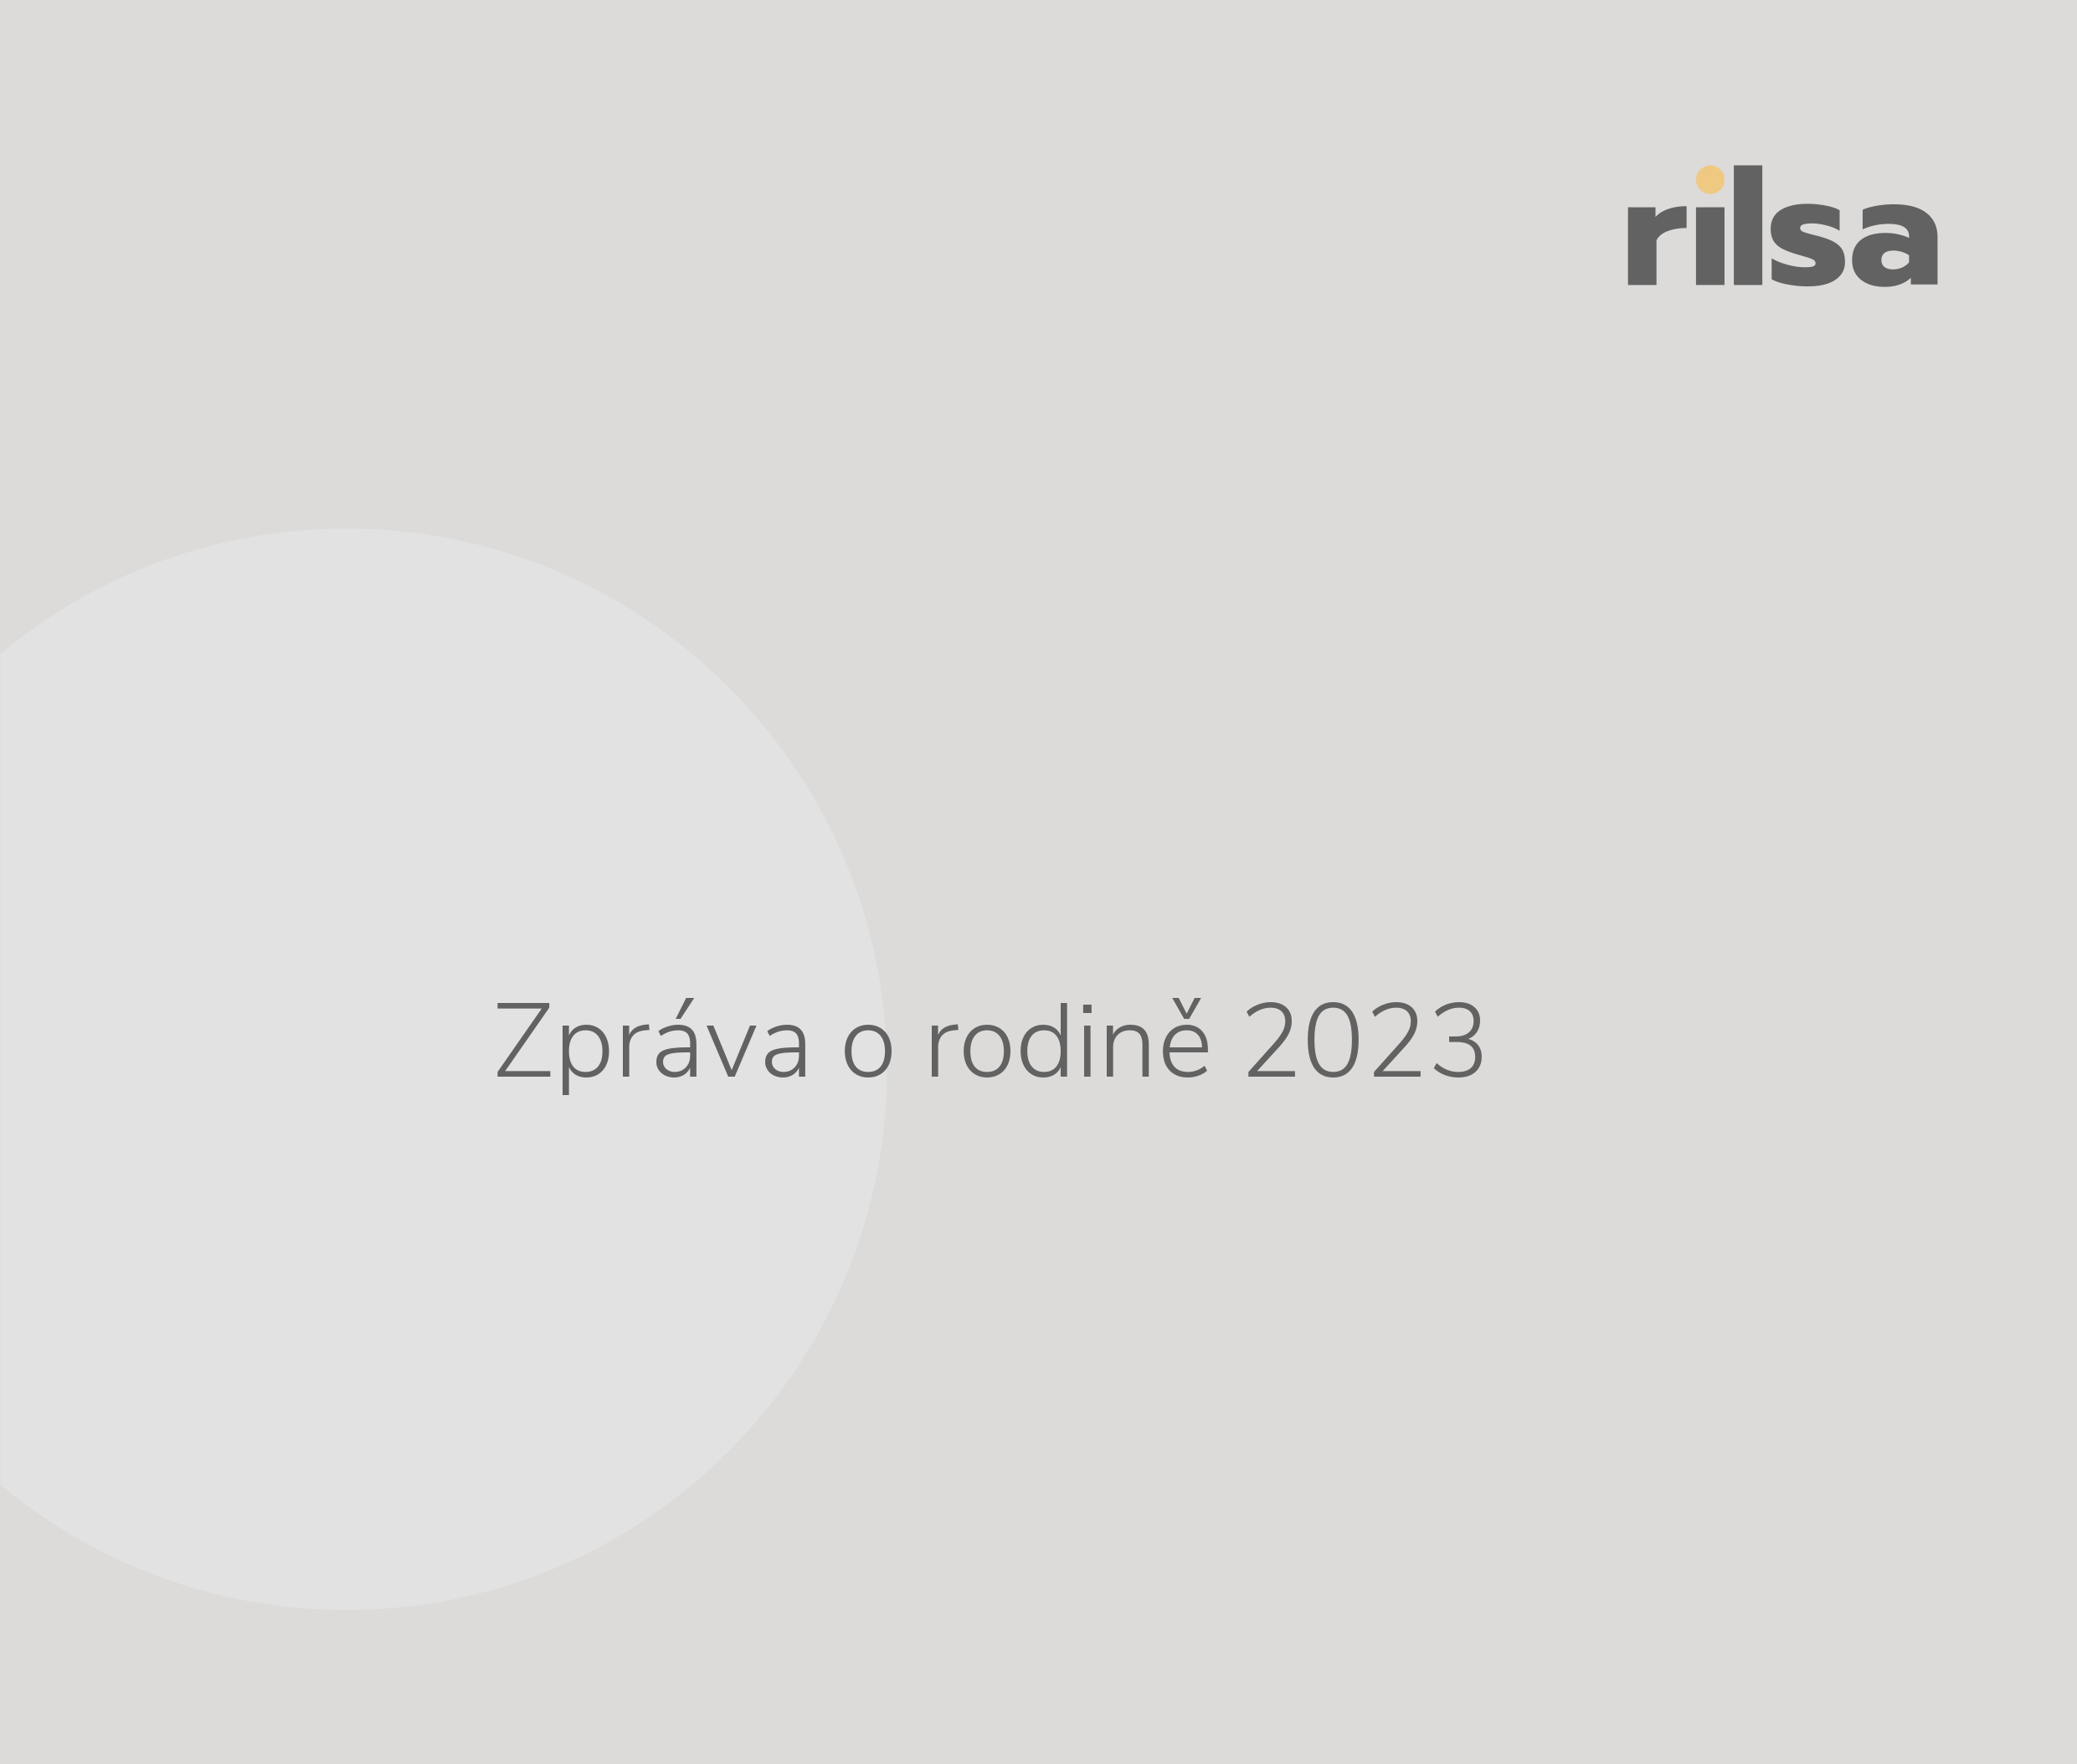 Vláda ČR na dnešním jednání vzala na vědomí Zprávu o rodině 2023